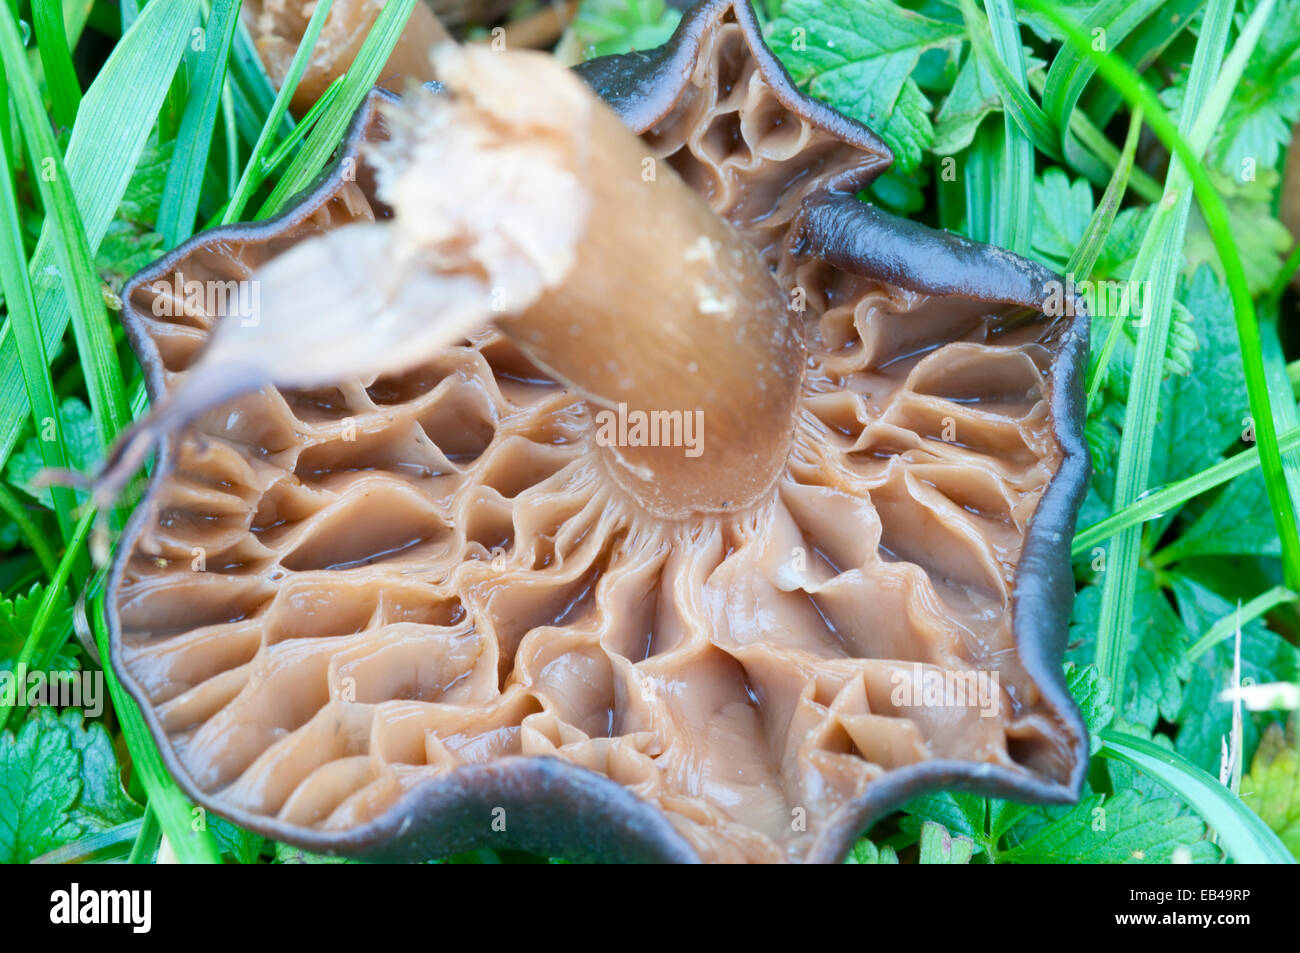 Uno dei funghi Cavalier, una specie di pascolo prese a Cheshunt, Herts mostra distorta branchie probabilmente a causa della pioggia Foto Stock